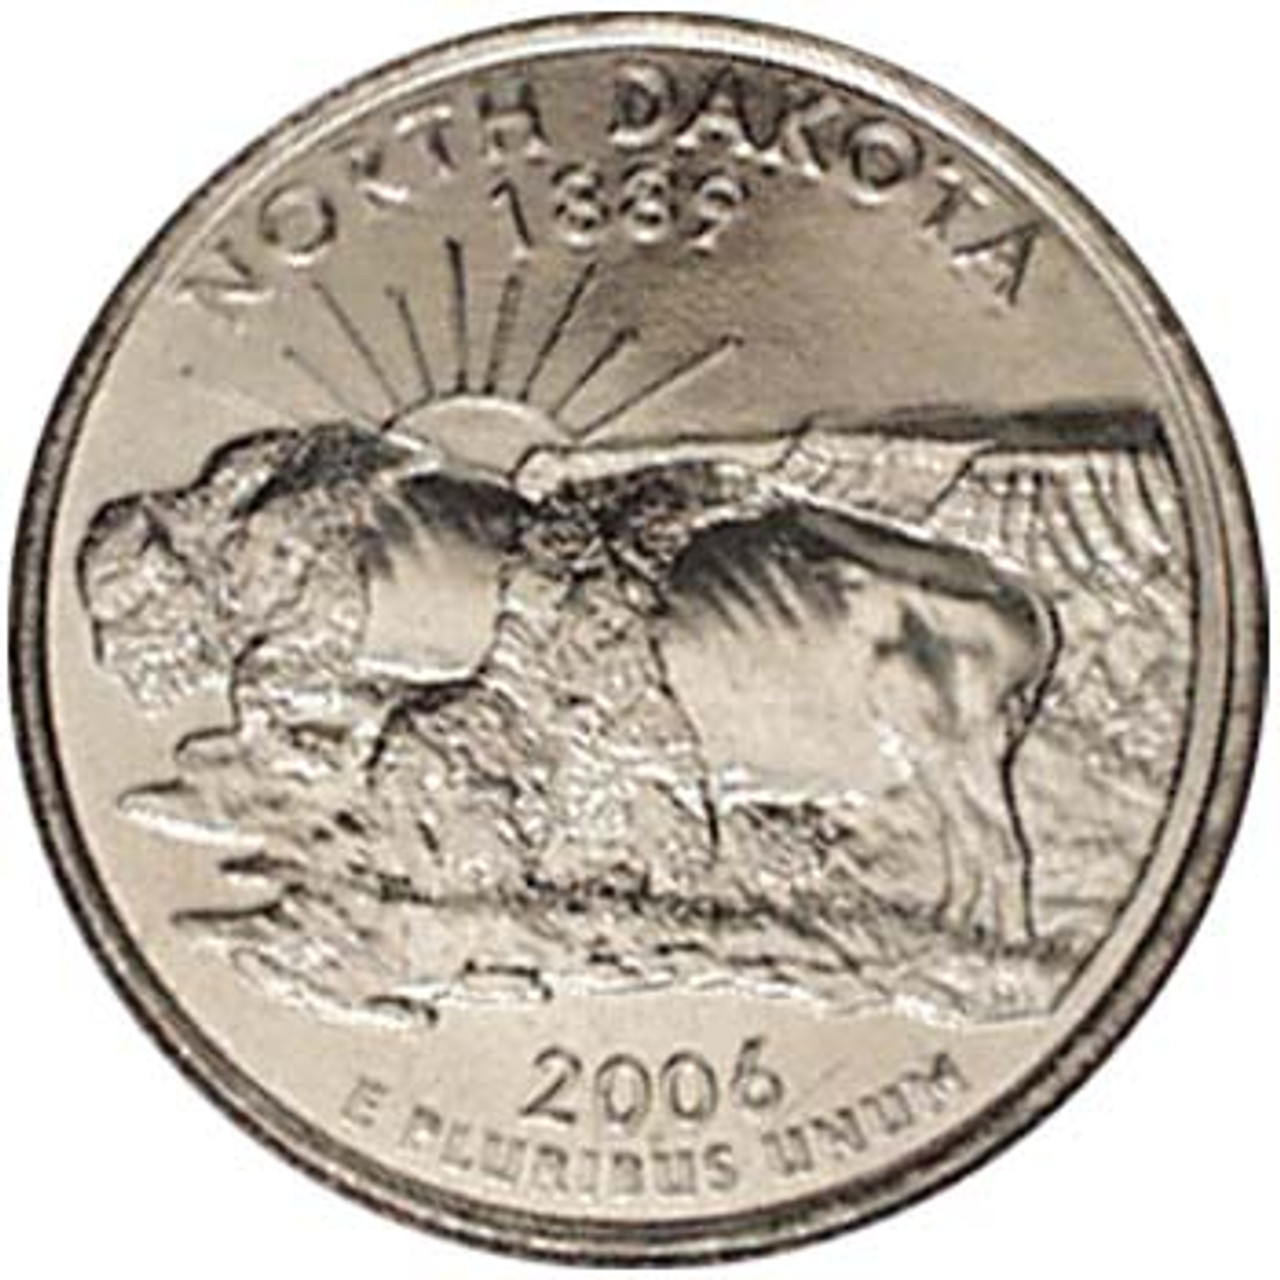 2006-P North Dakota Quarter Brilliant Uncirculated Image 1